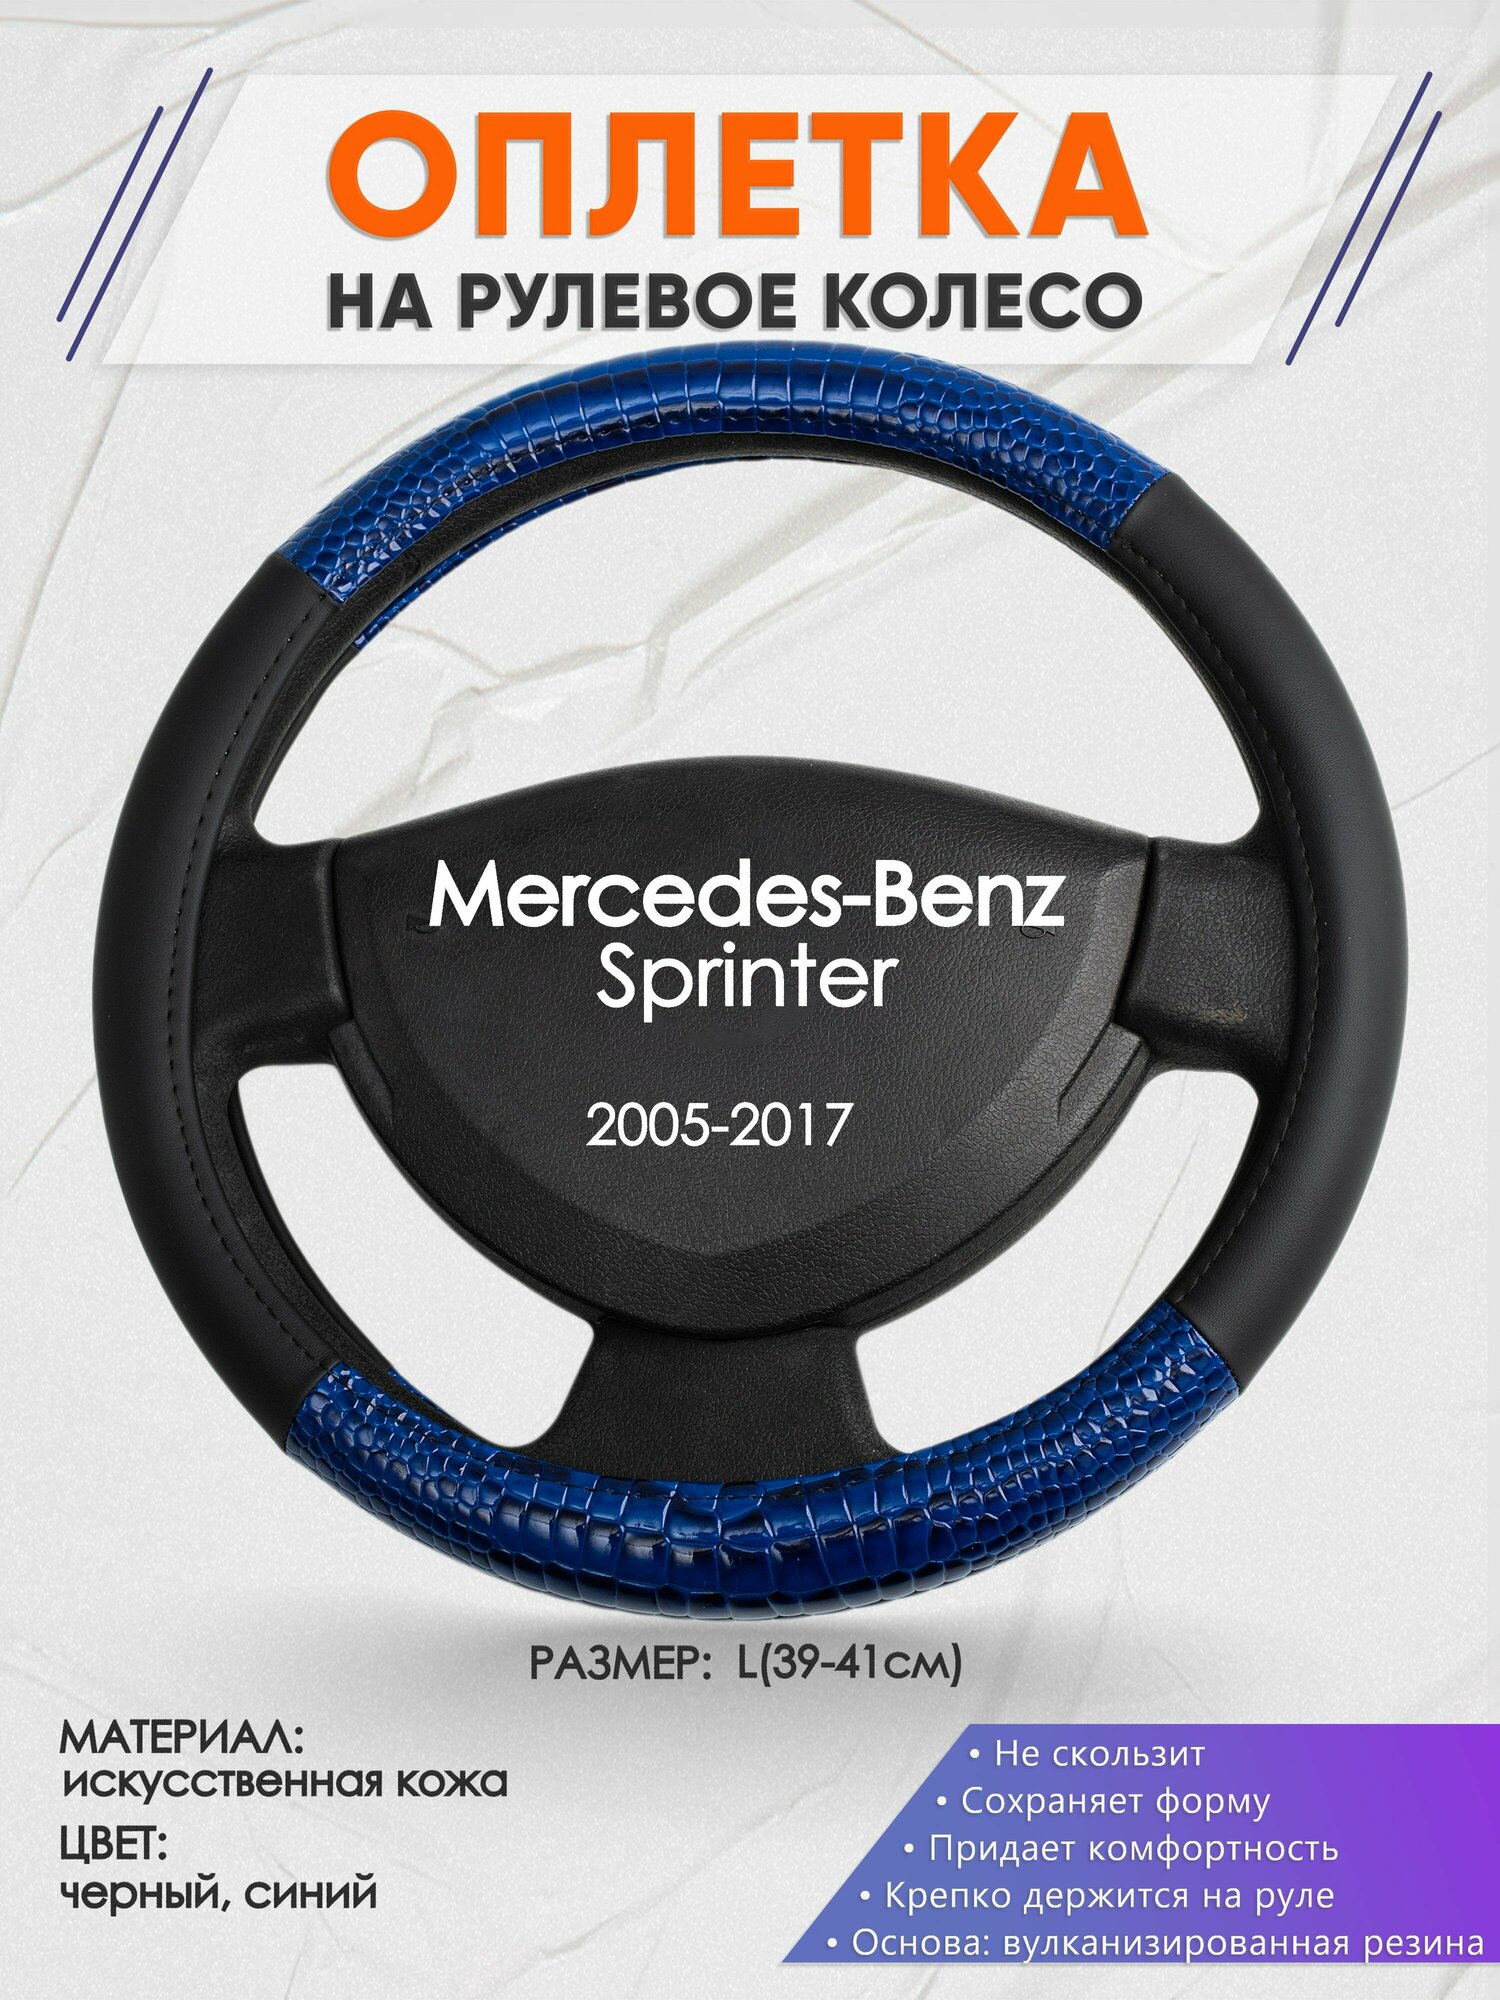 Оплетка на руль для Mercedes-Benz Sprinter (Мерседес Бенц Спринтер) 2005-2017, L(39-41см), Искусственная кожа 82